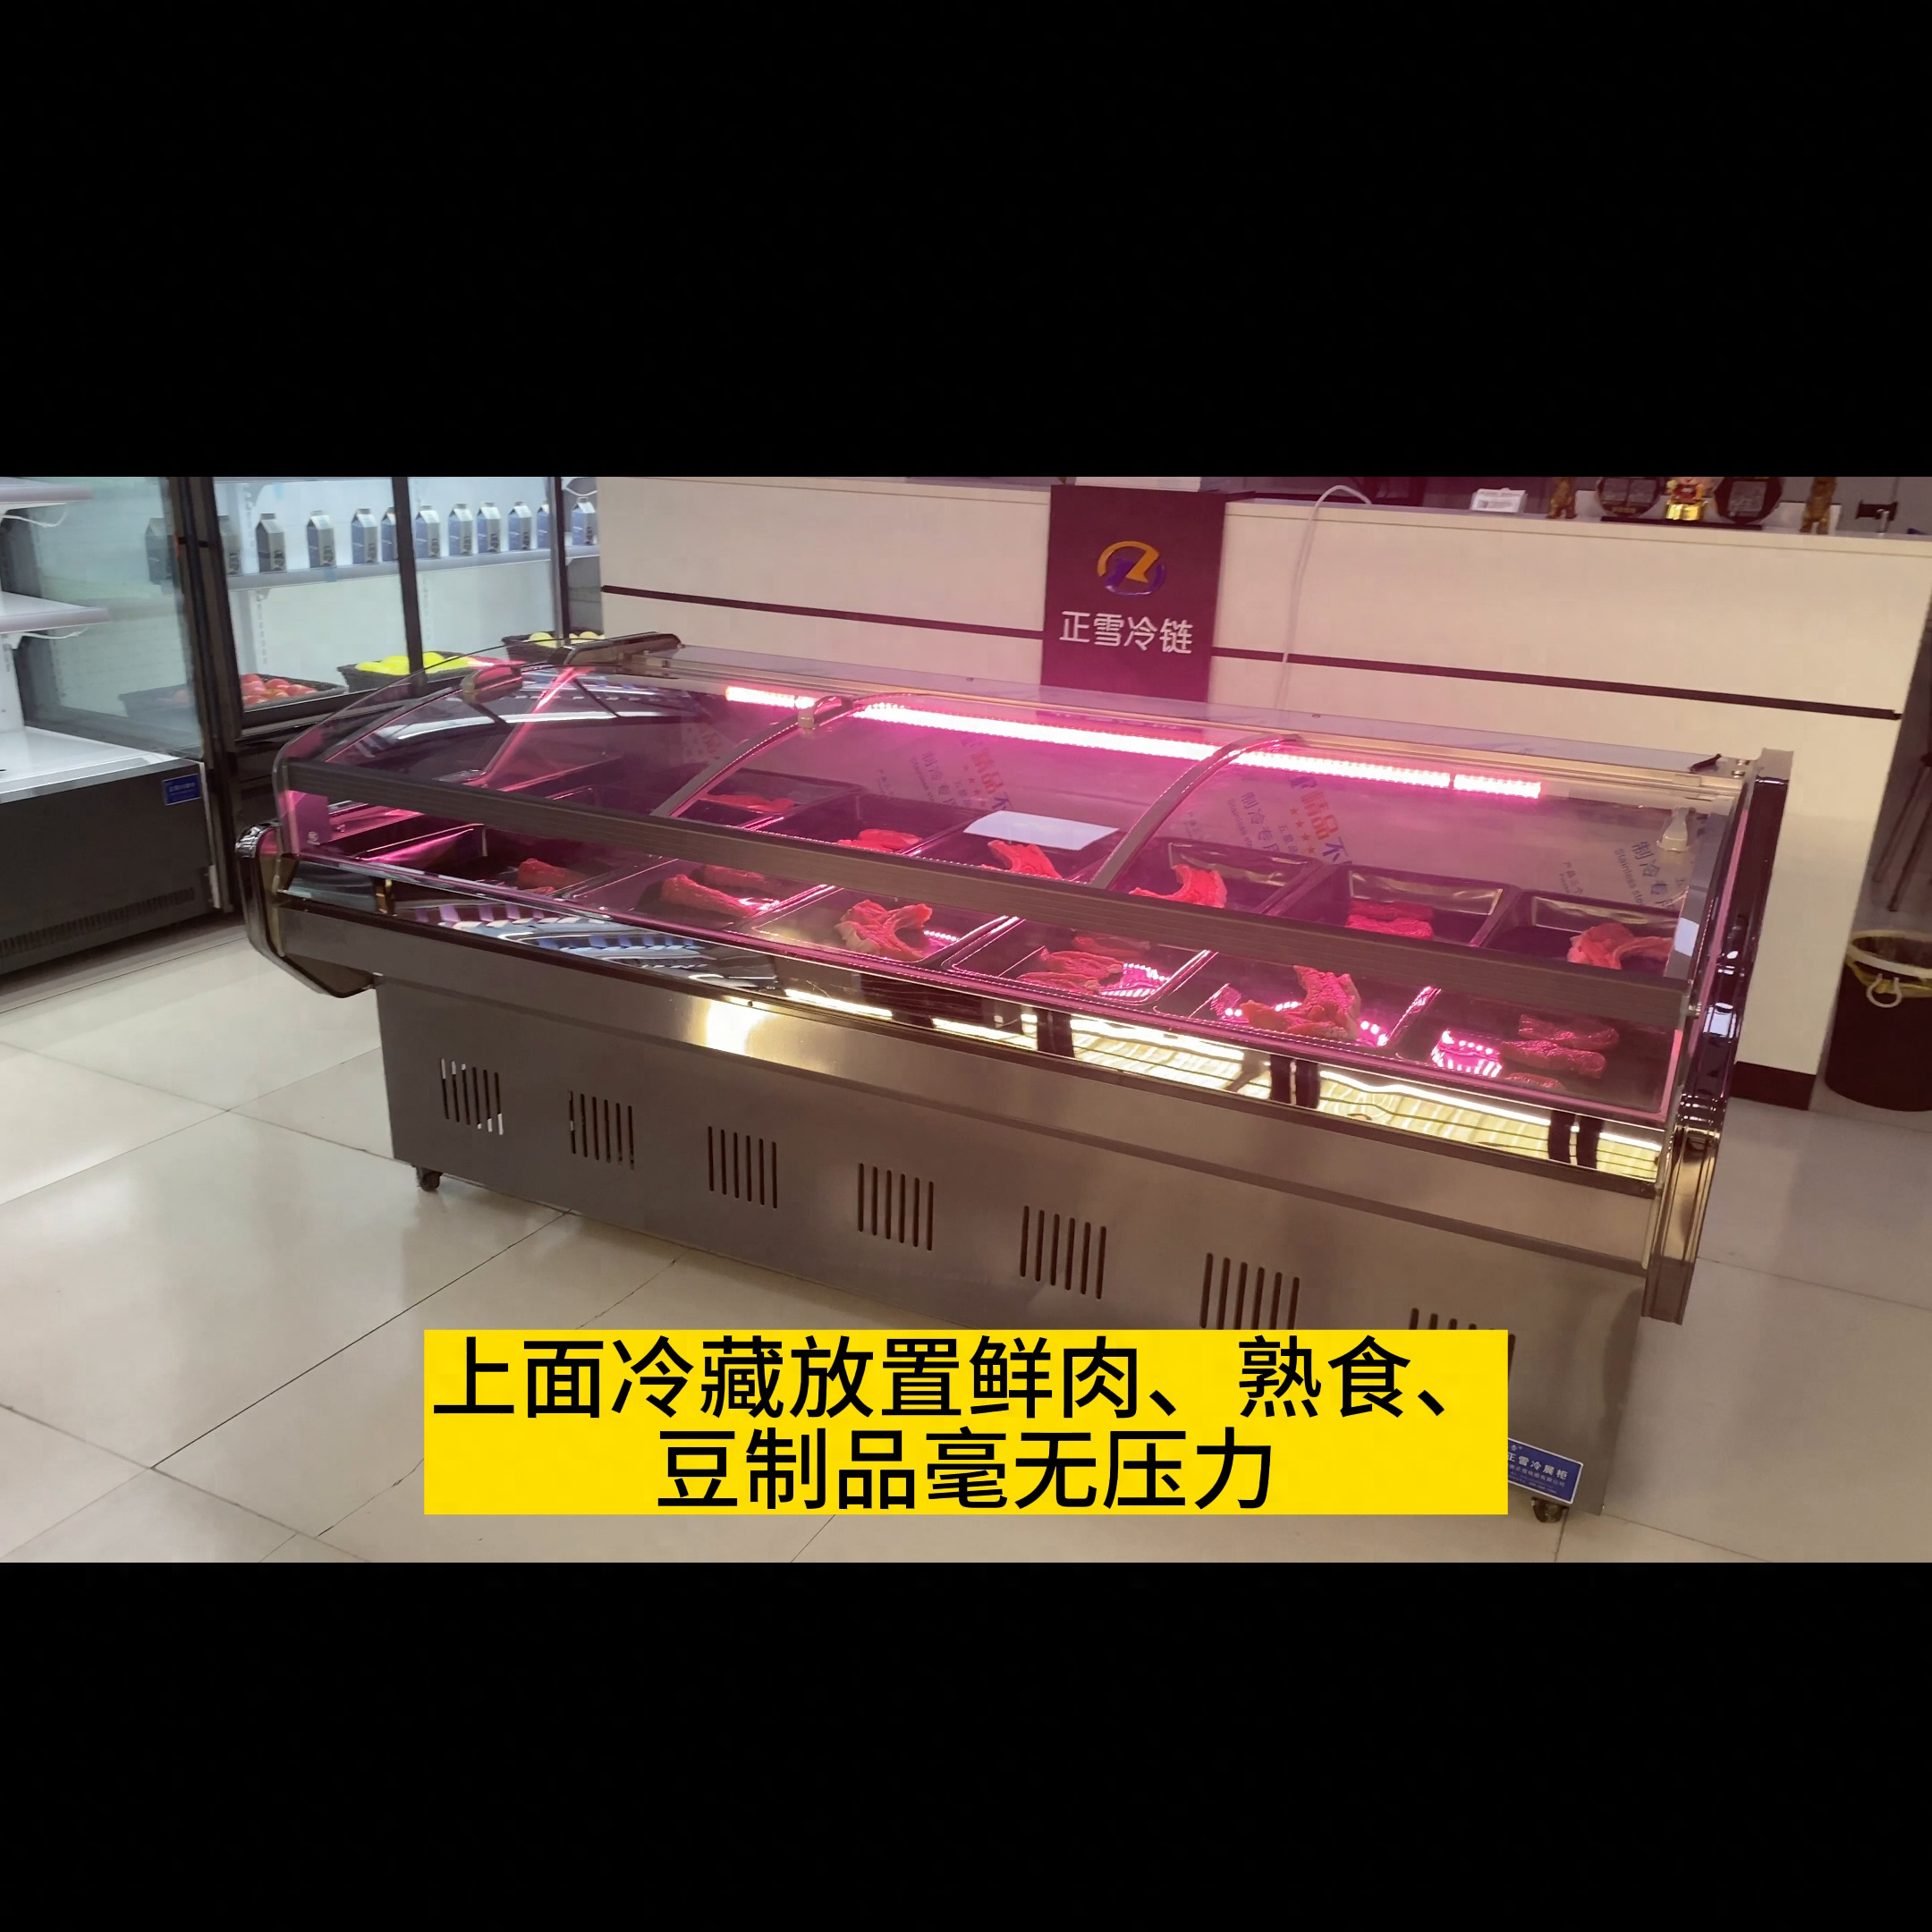 直冷鲜肉柜。卖肉，这一台冷柜就够了。上面冷藏放置鲜肉、熟食、豆制品毫无压力。1.2米到3米都可以定做，宽度1.05米，高度0.88米，展示面积大，方便客户挑选商品。配置鲜肉专用灯